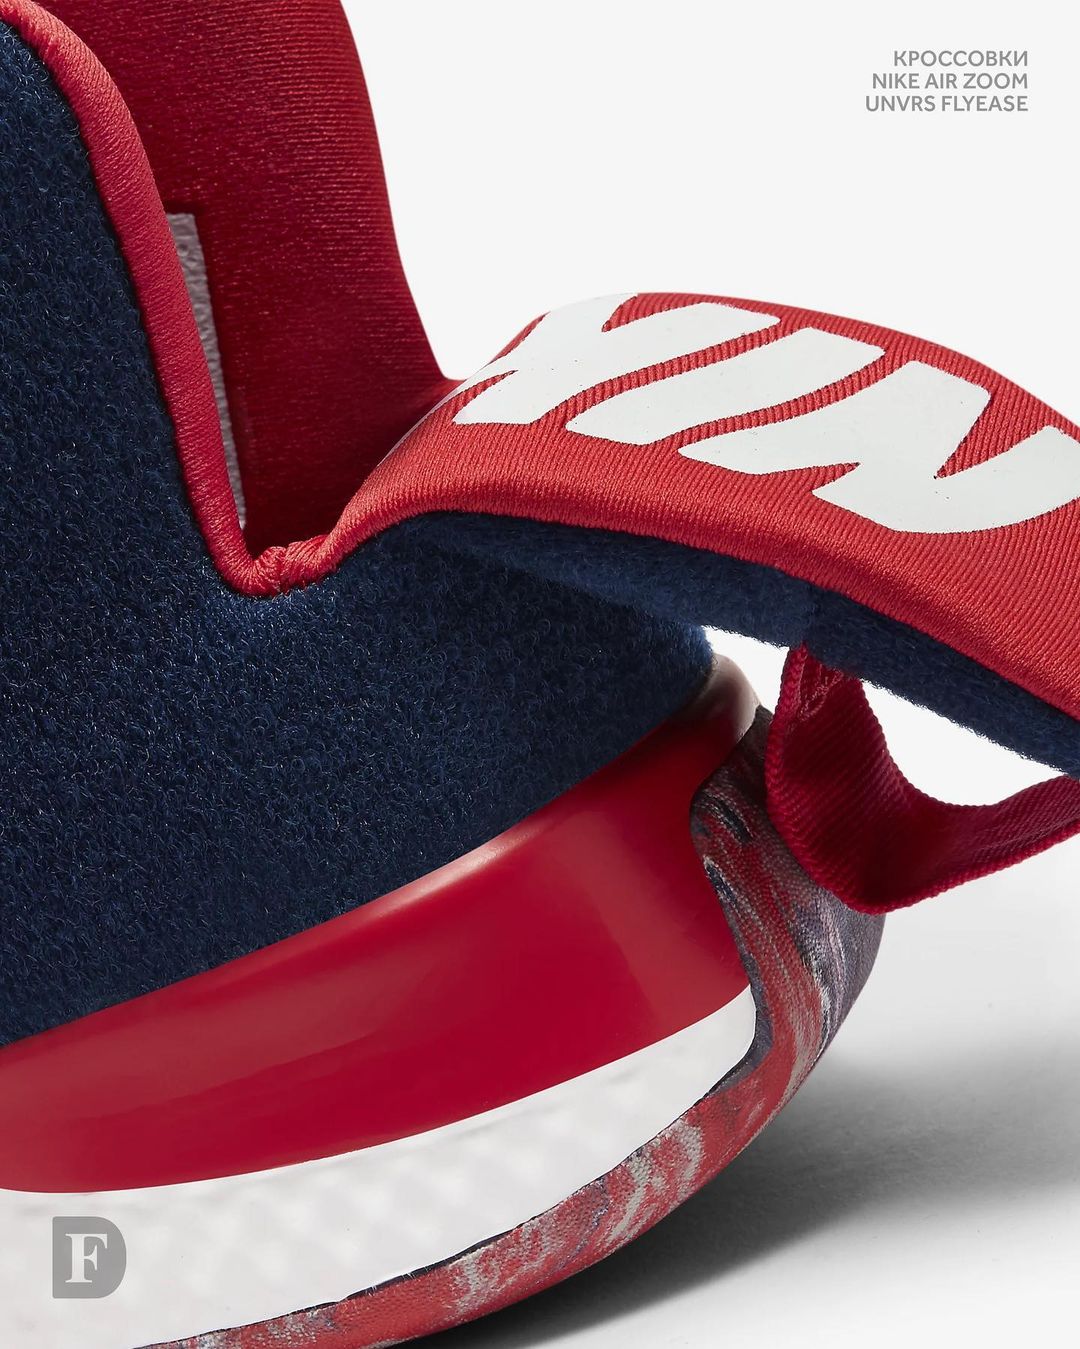 𝐅𝐔𝐍𝐊𝐘 𝐃𝐔𝐍𝐊𝐘 - Nike Air Zoom Unvrs Flyease / 12790₽
⠀
Мужские баскетбольные кроссовки. Тканый материал верха Flyknit для лёгкости, вентиляции и поддержки. Амортизирующая вставка Zoom Air по всей длине...